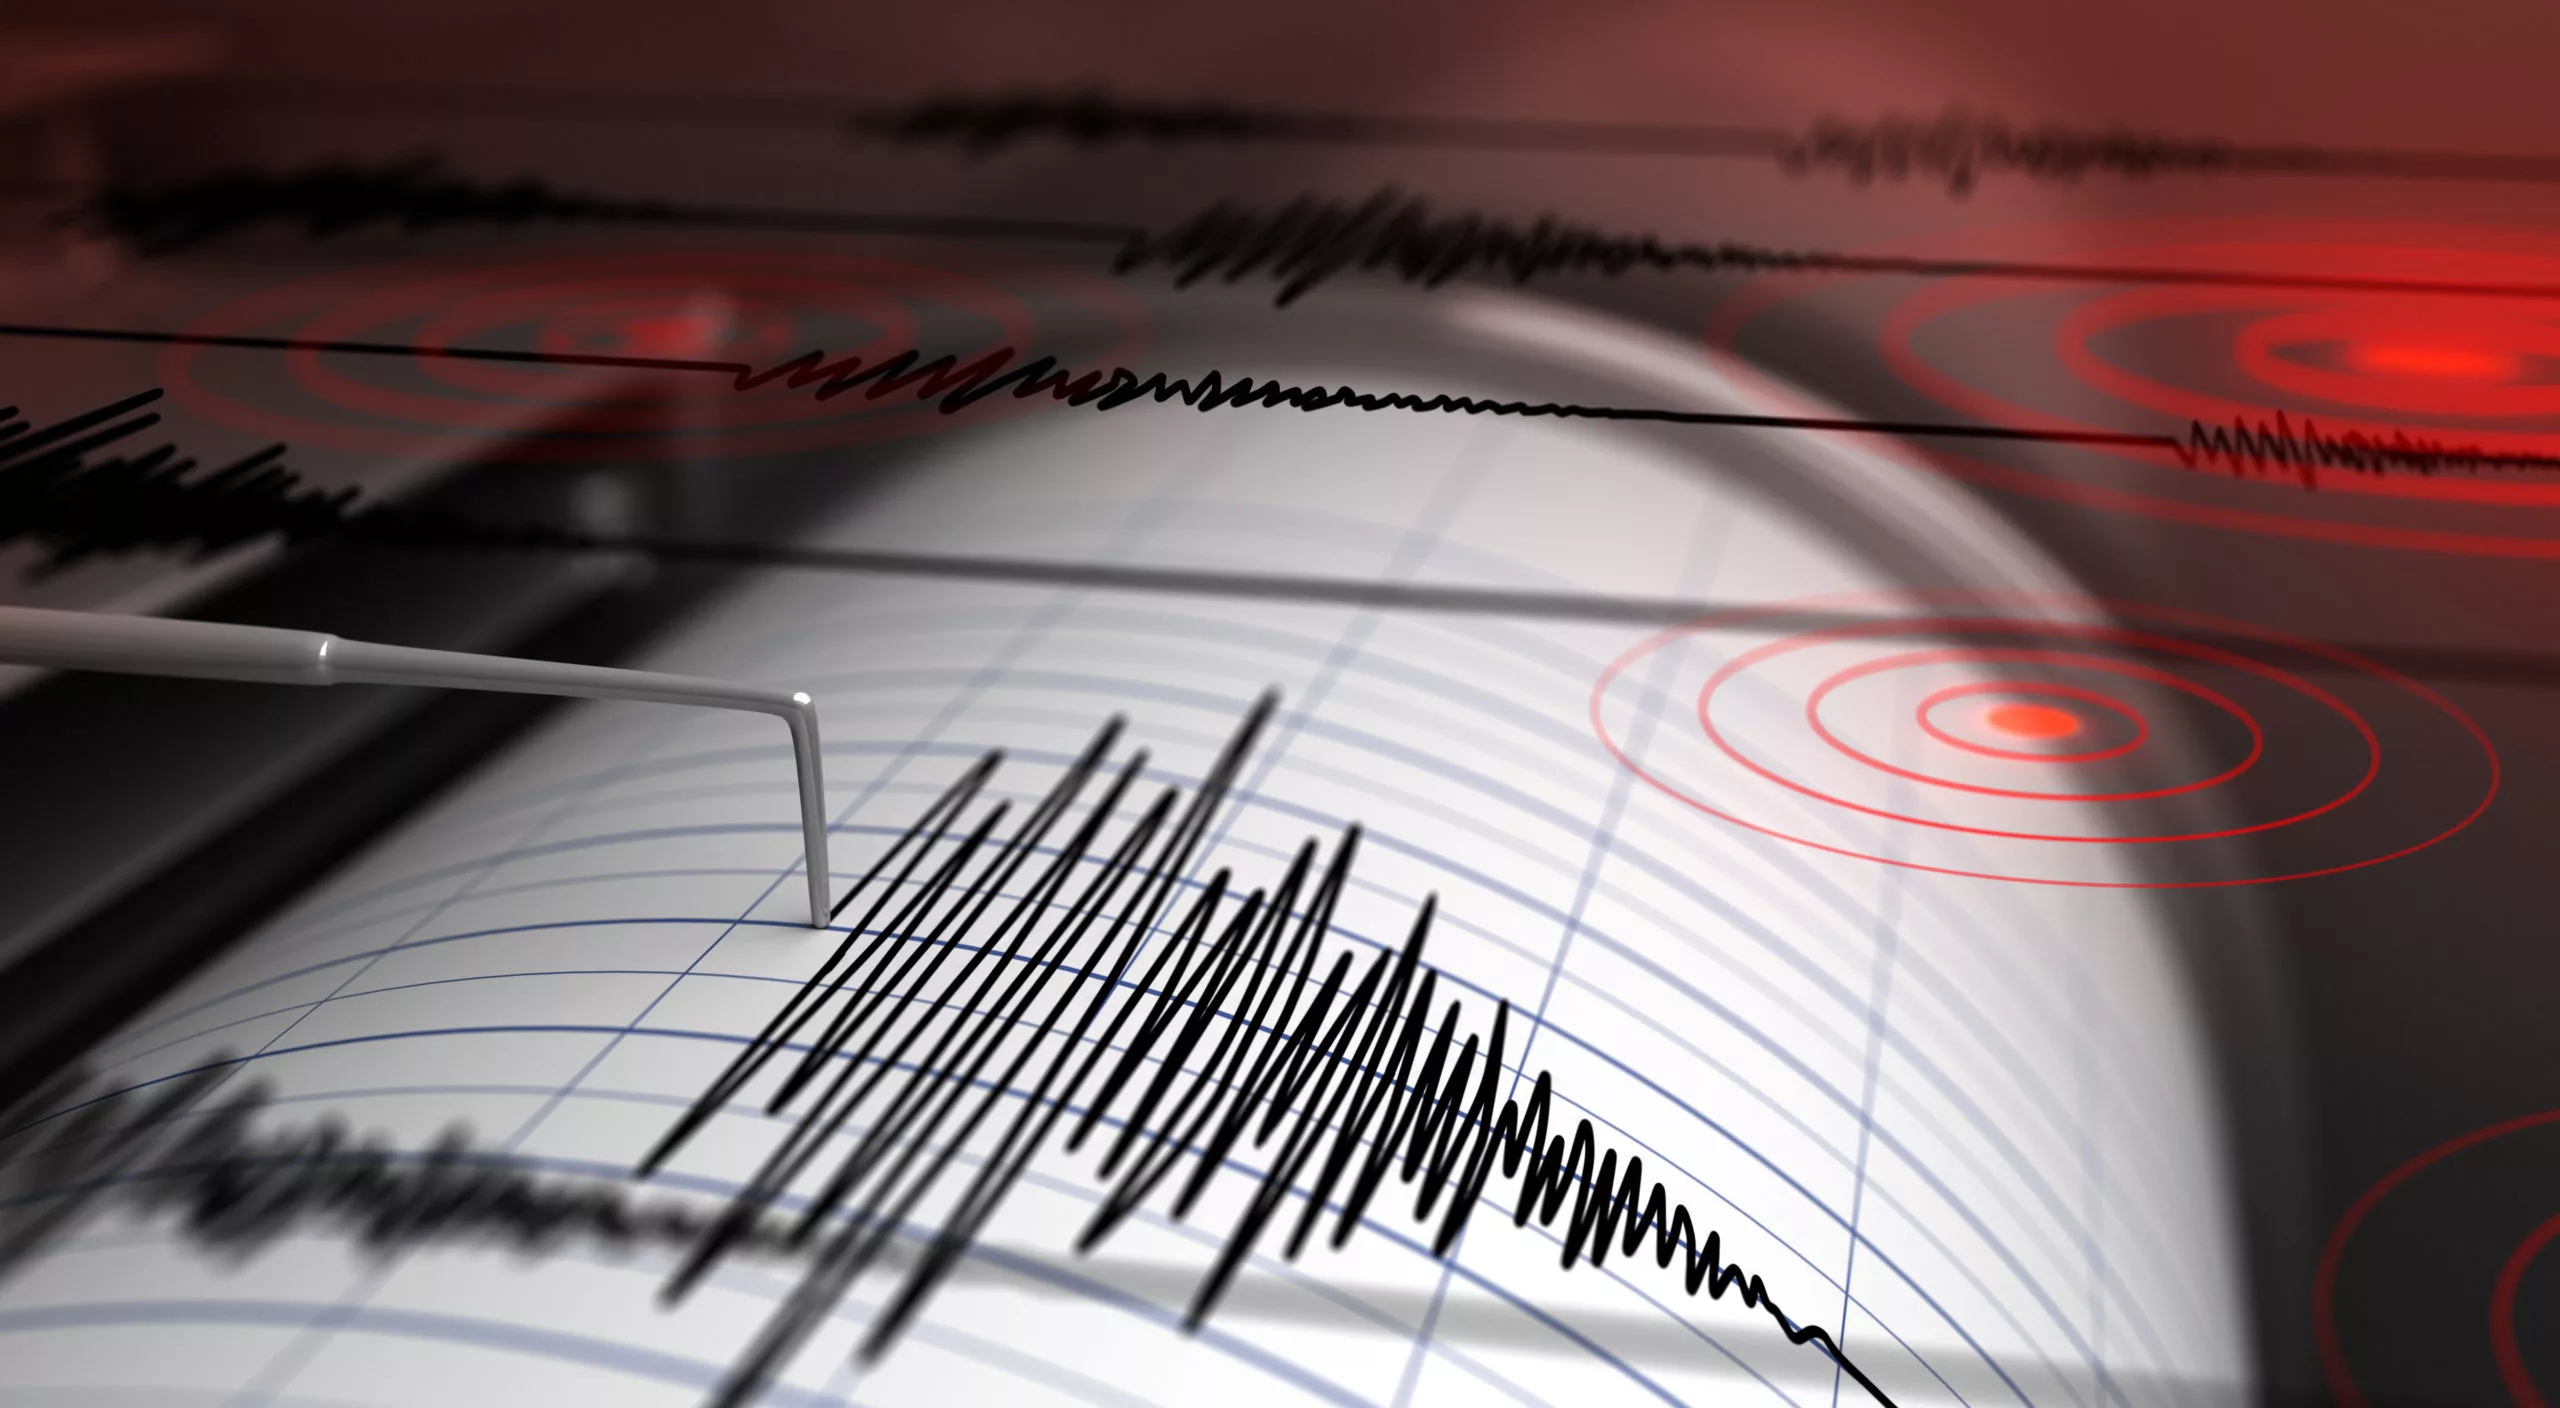 Un nou cutremur s-a produs în Arad, în această dimineață, având magnitudinea 3.5